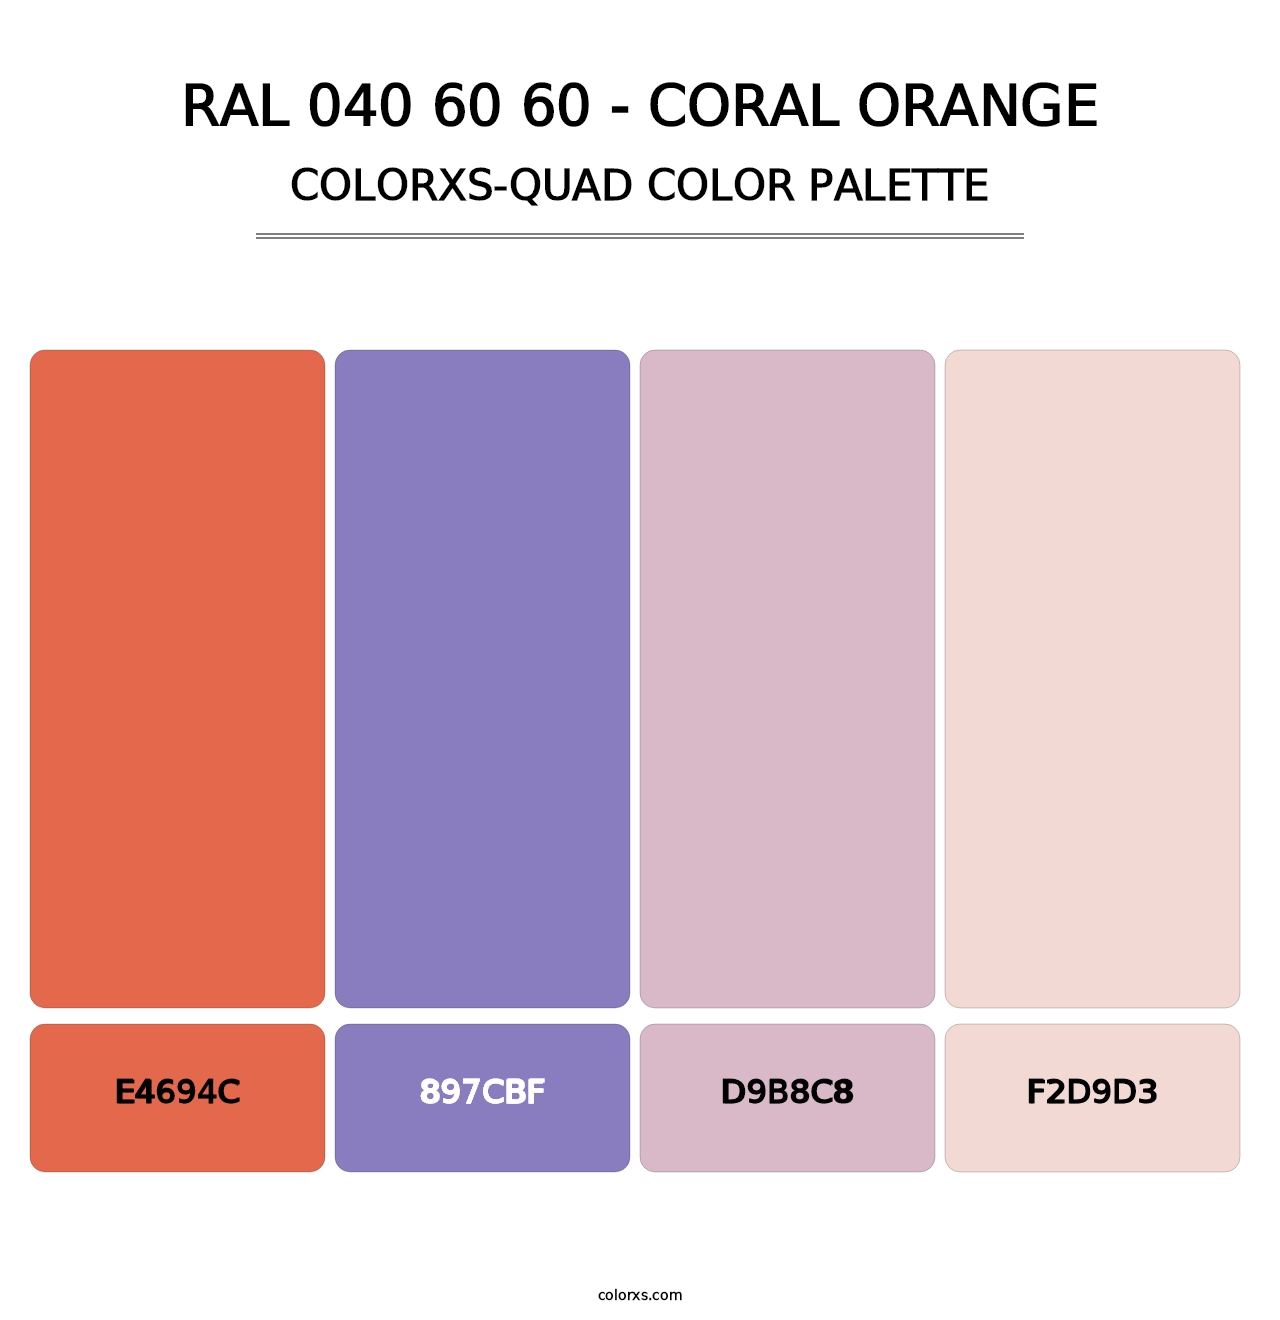 RAL 040 60 60 - Coral Orange - Colorxs Quad Palette